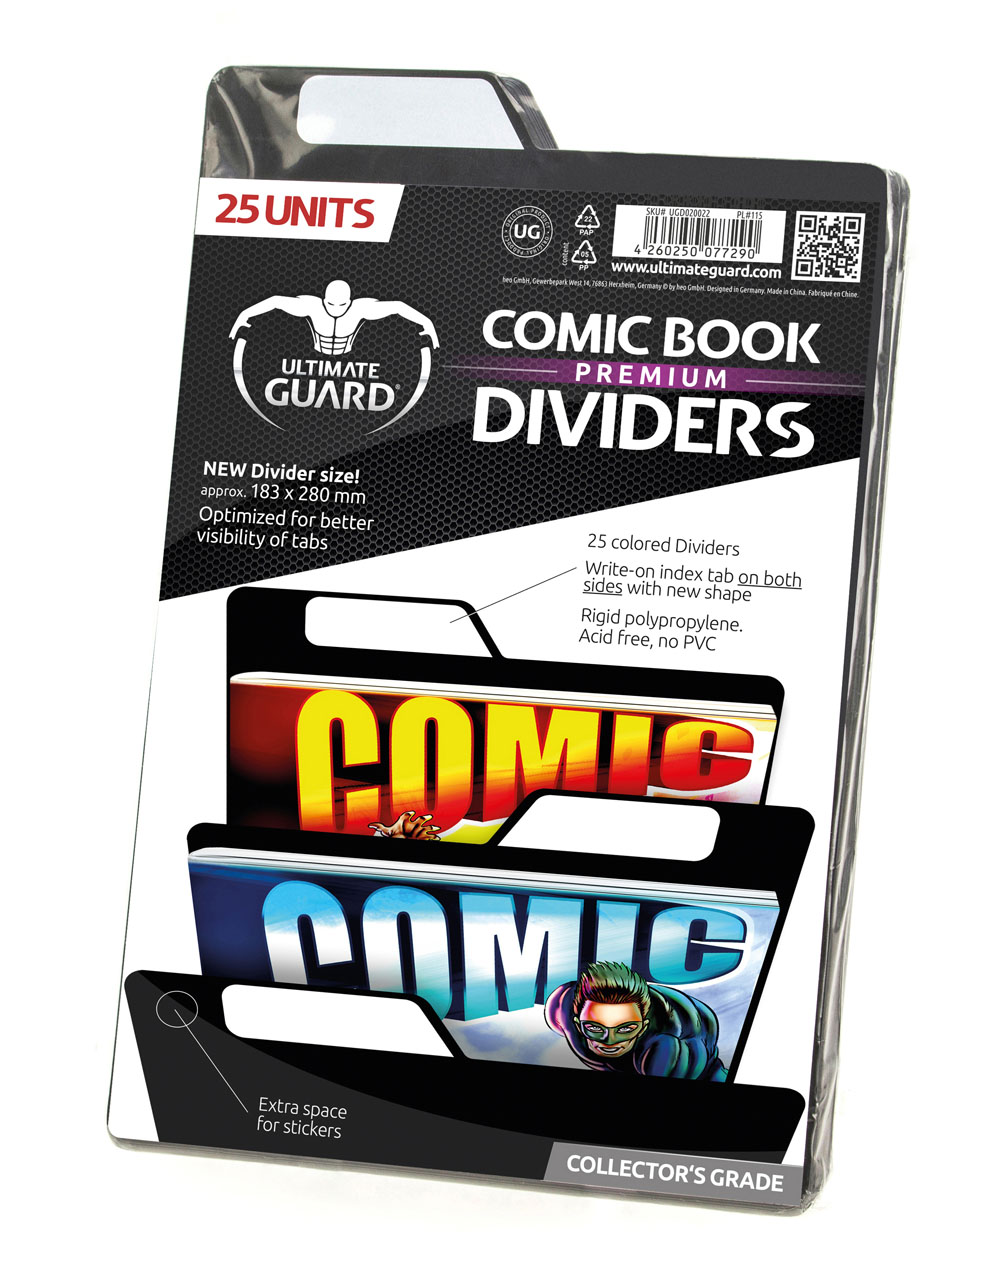 ULTIMATE GUARD 25 Intercalaires pour Comics Premium Comic Book Dividers Noir